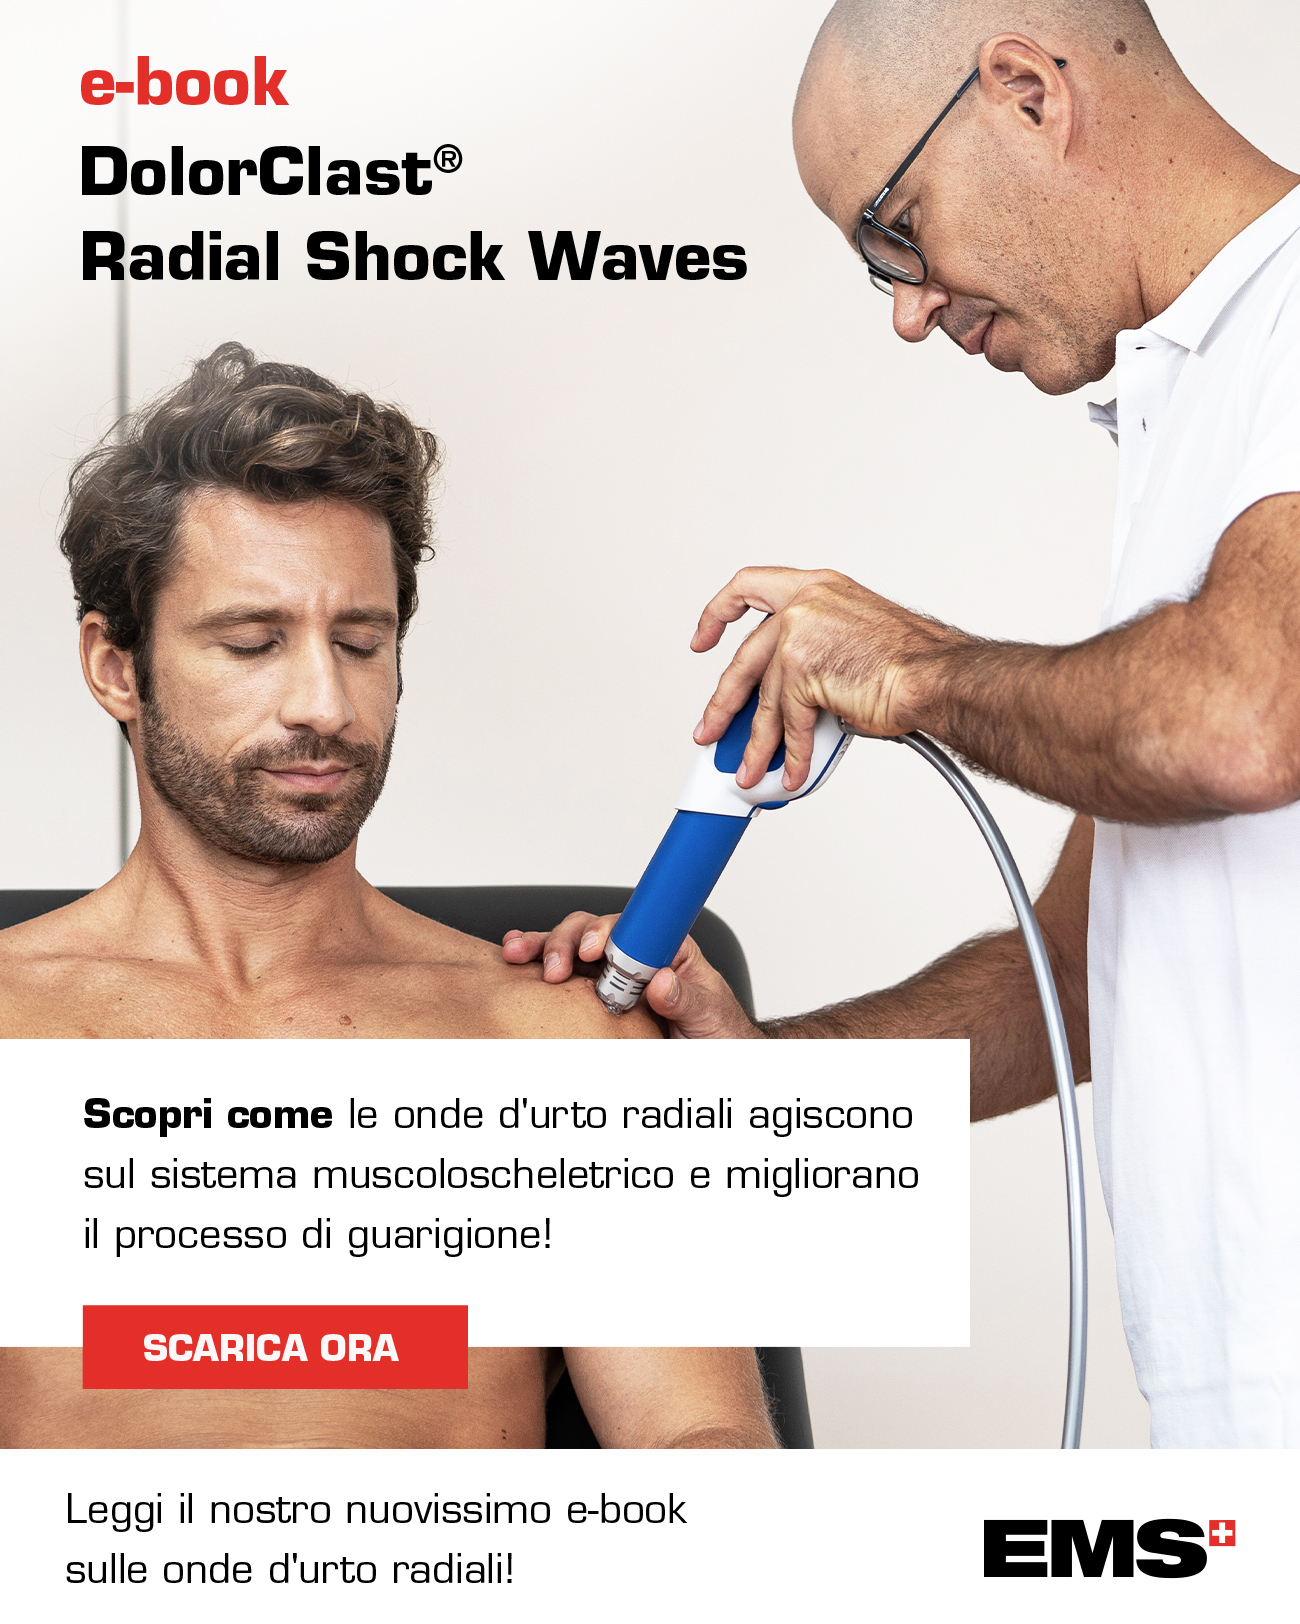 radial shock waves it